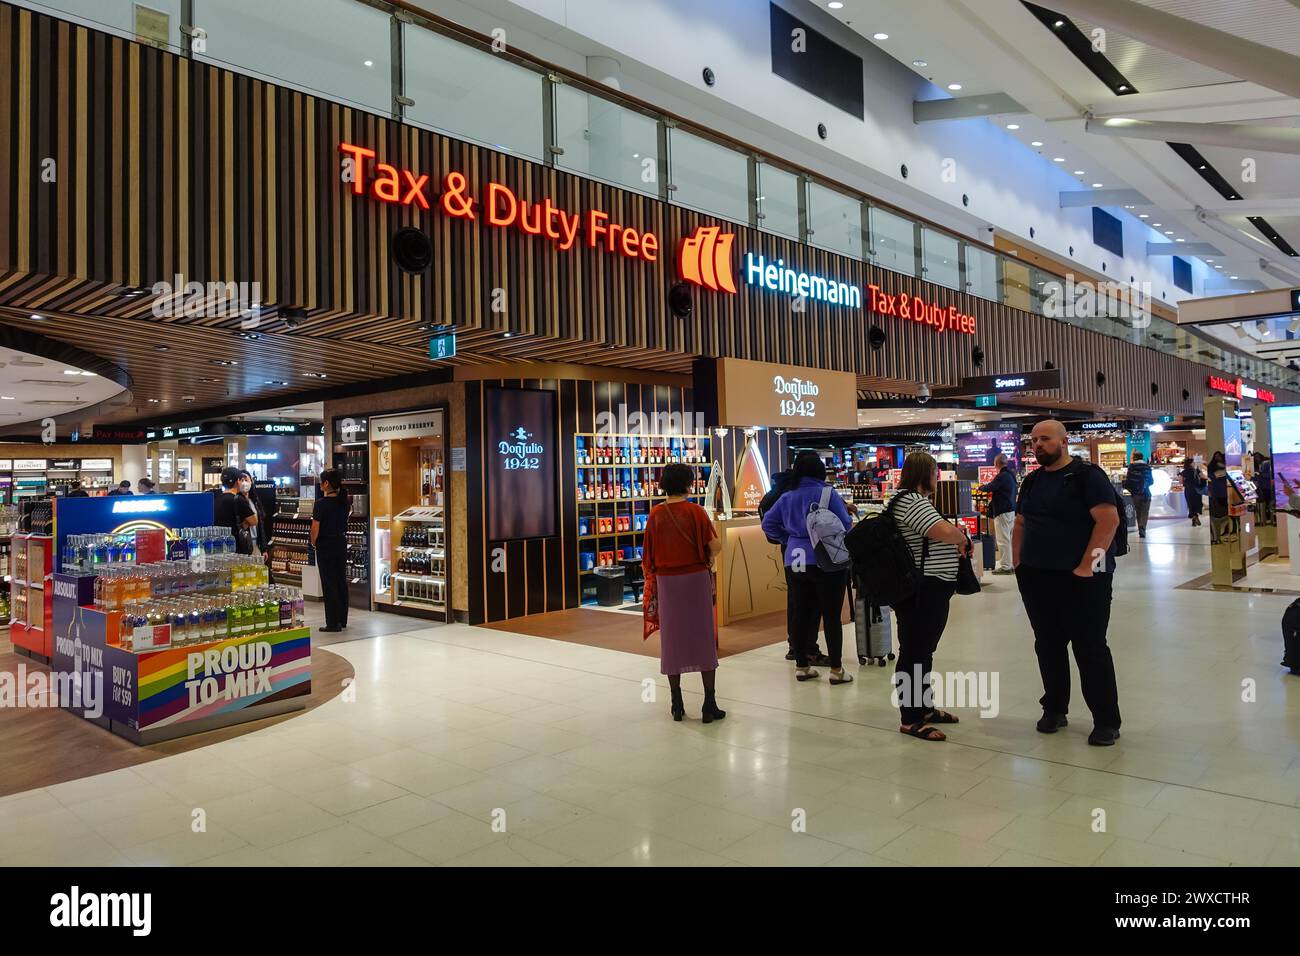 Steuer- und Duty-Free-Geschäfte im Flughafen sydney kingsford smith Stockfoto